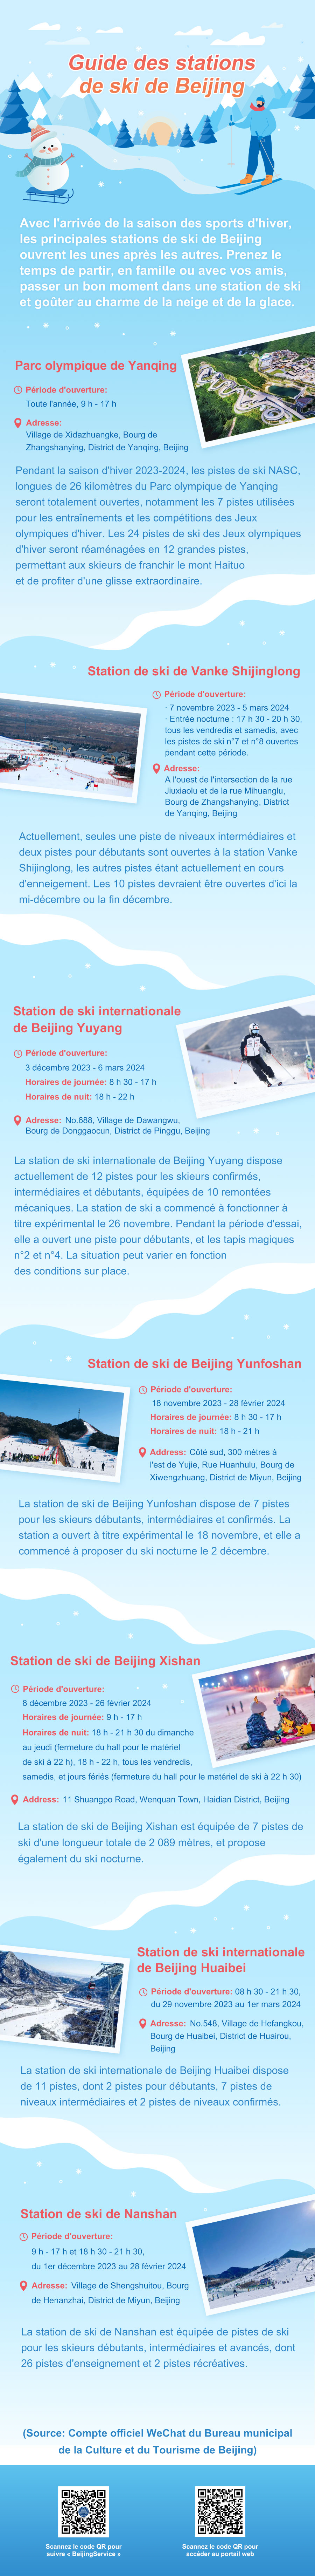 北京玩雪图鉴速览-法语.jpg